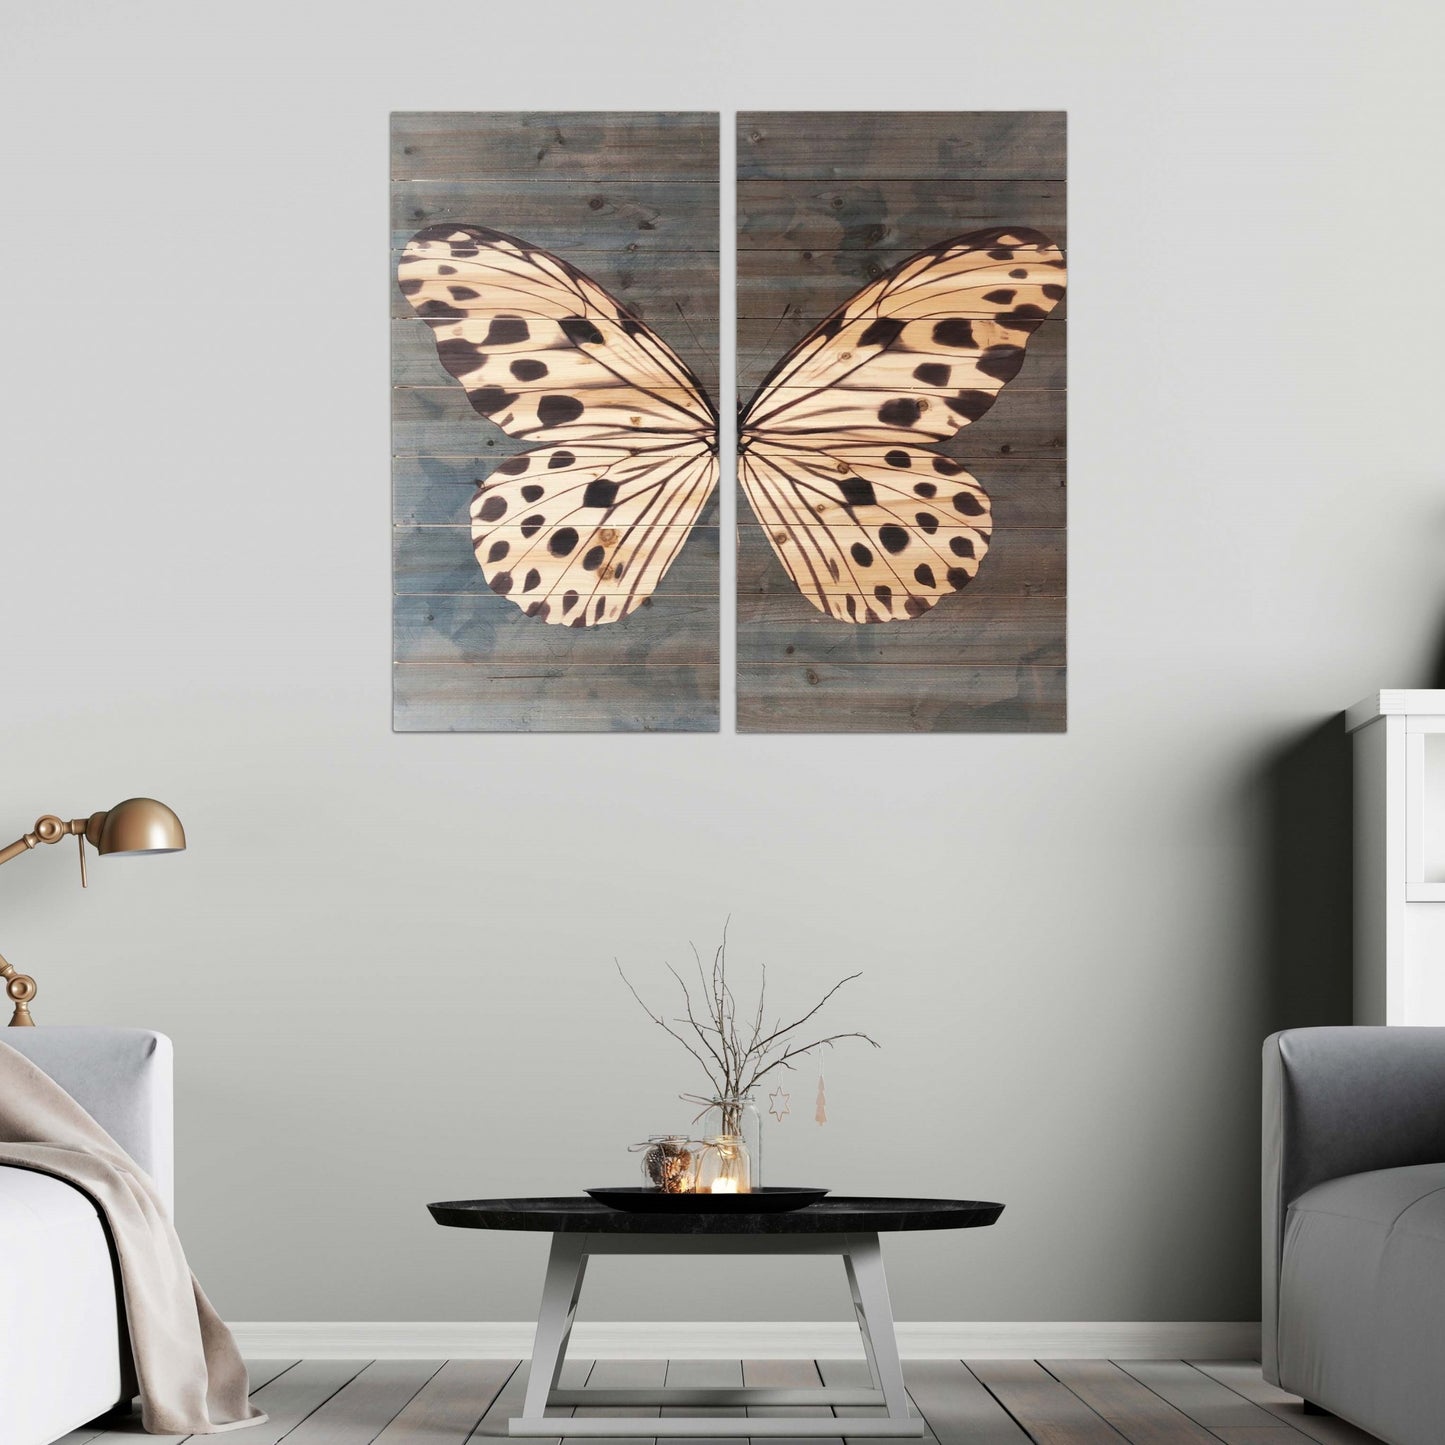 Two Piece Graceful Butterfly Wood Plank Wall Art